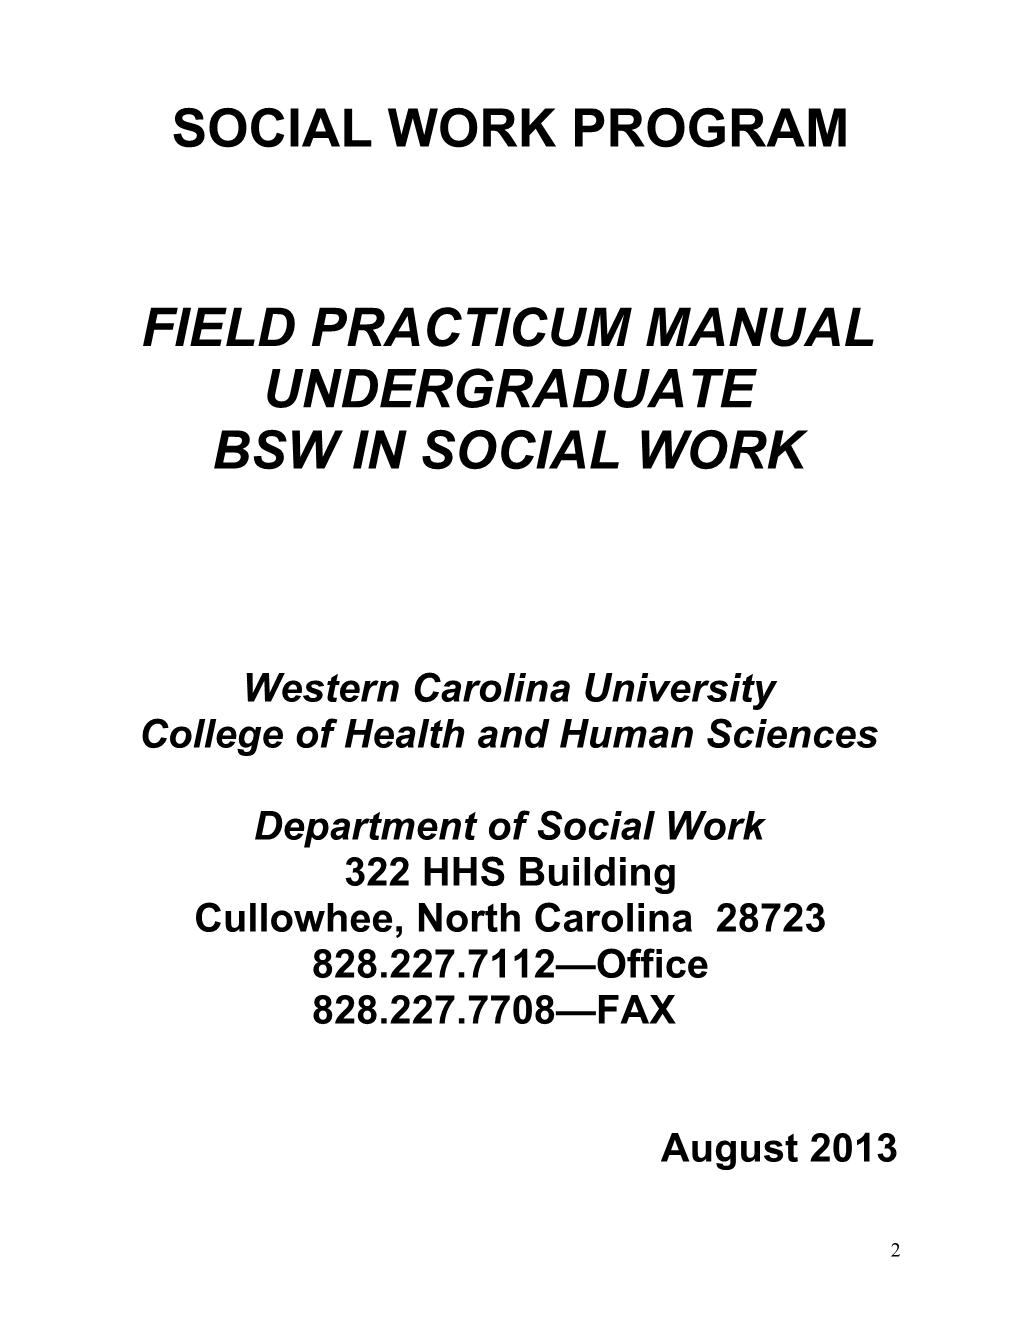 Social Work Program s1